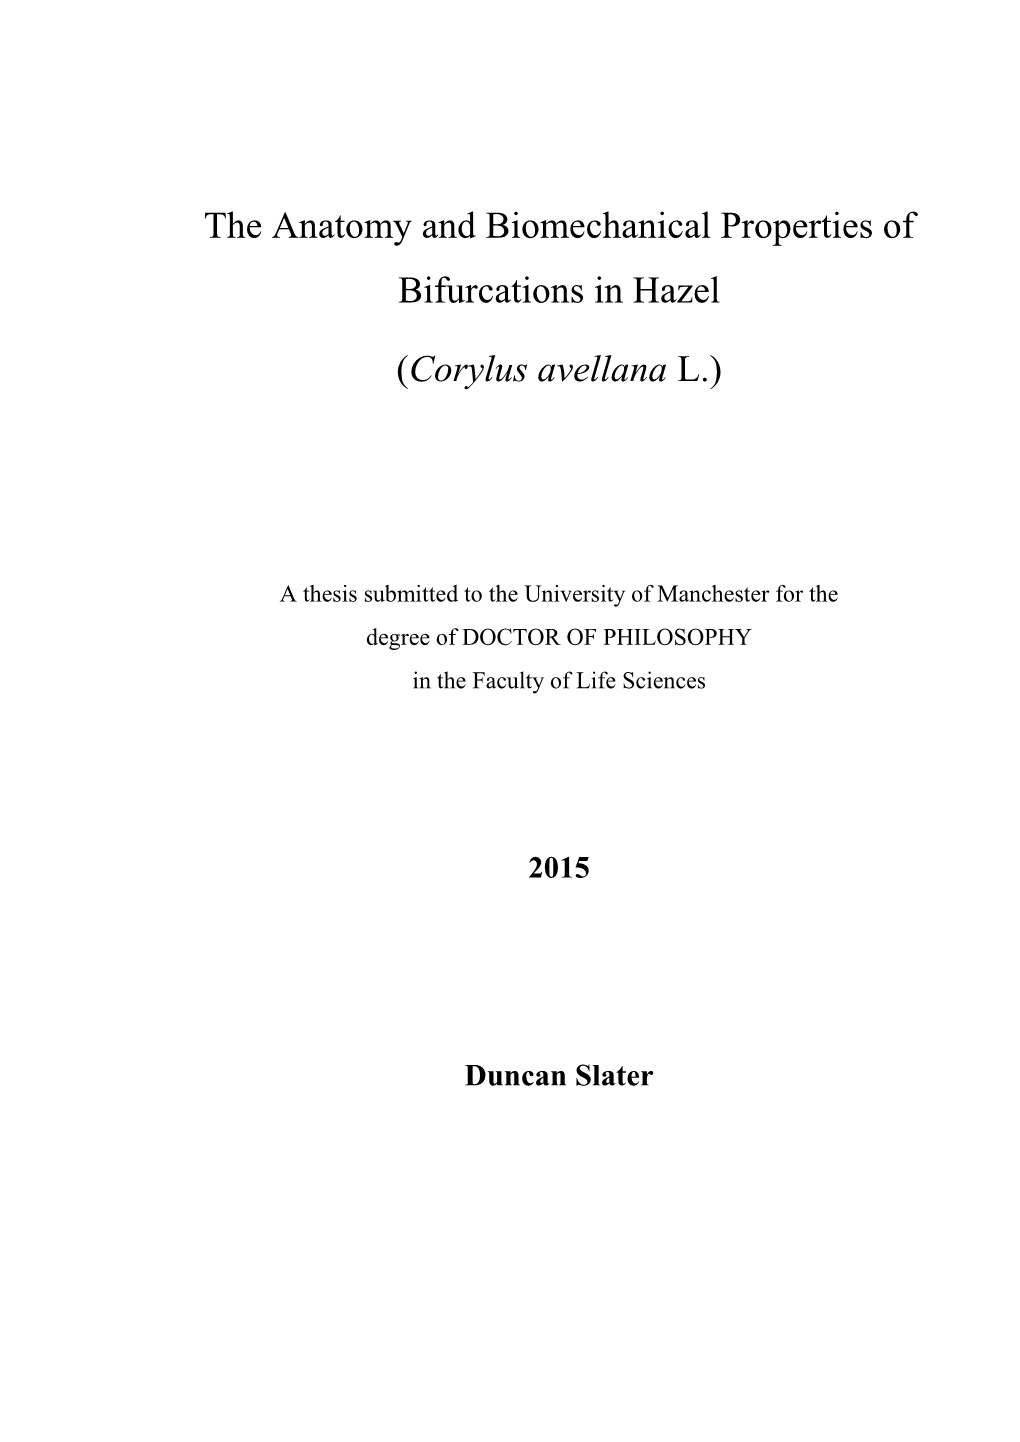 The Anatomy and Biomechanical Properties of Bifurcations in Hazel